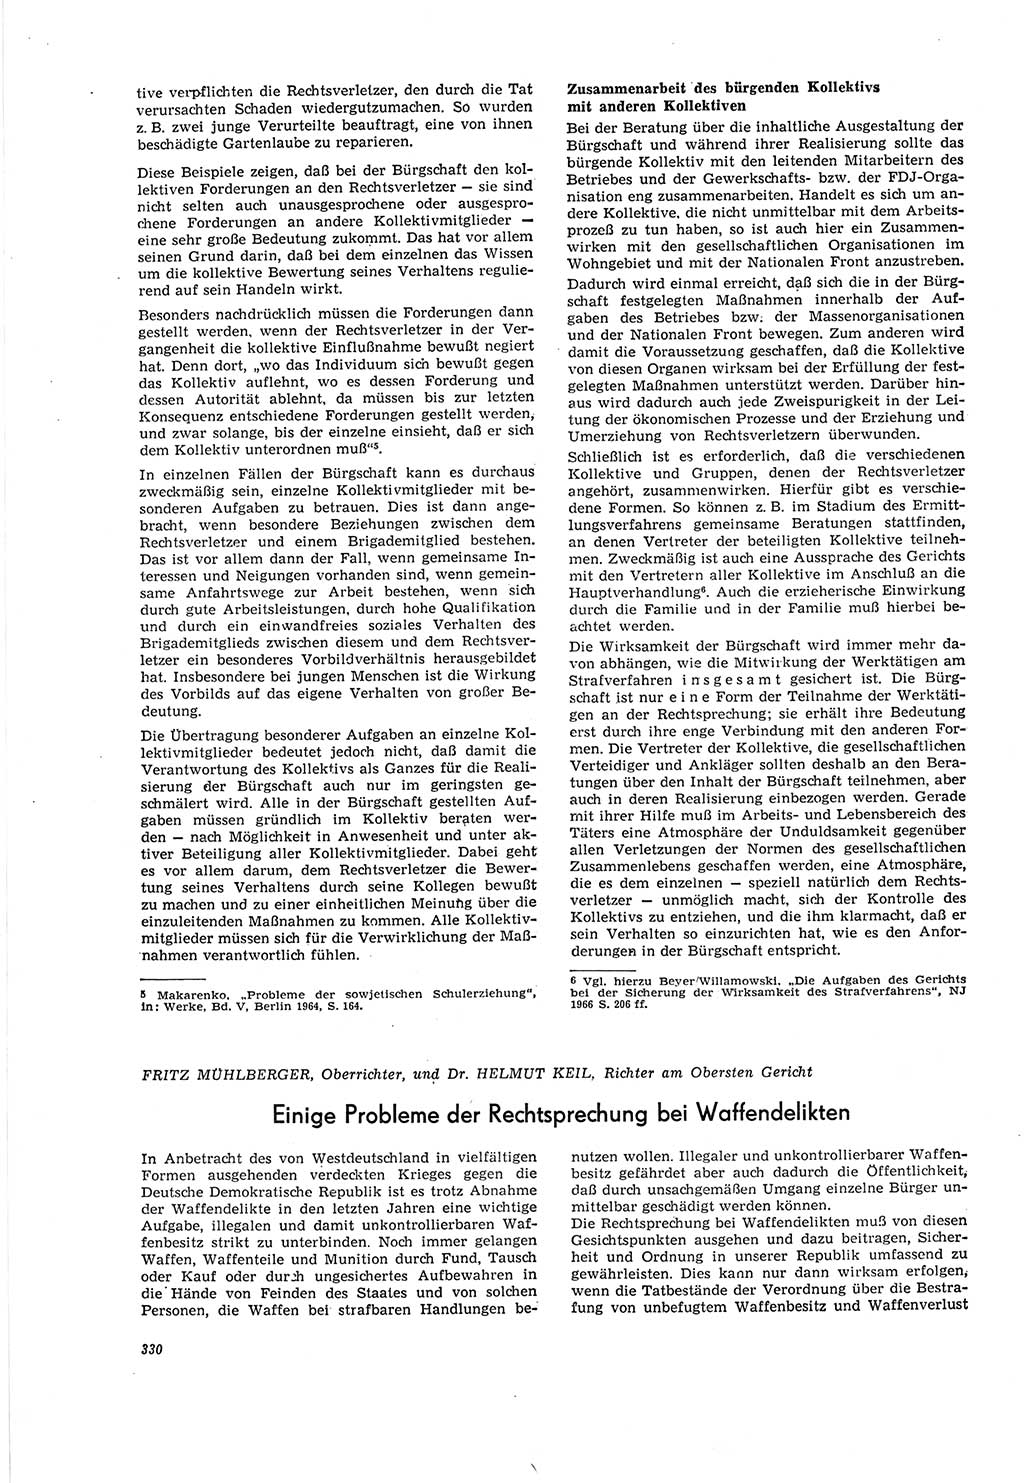 Neue Justiz (NJ), Zeitschrift für Recht und Rechtswissenschaft [Deutsche Demokratische Republik (DDR)], 20. Jahrgang 1966, Seite 330 (NJ DDR 1966, S. 330)